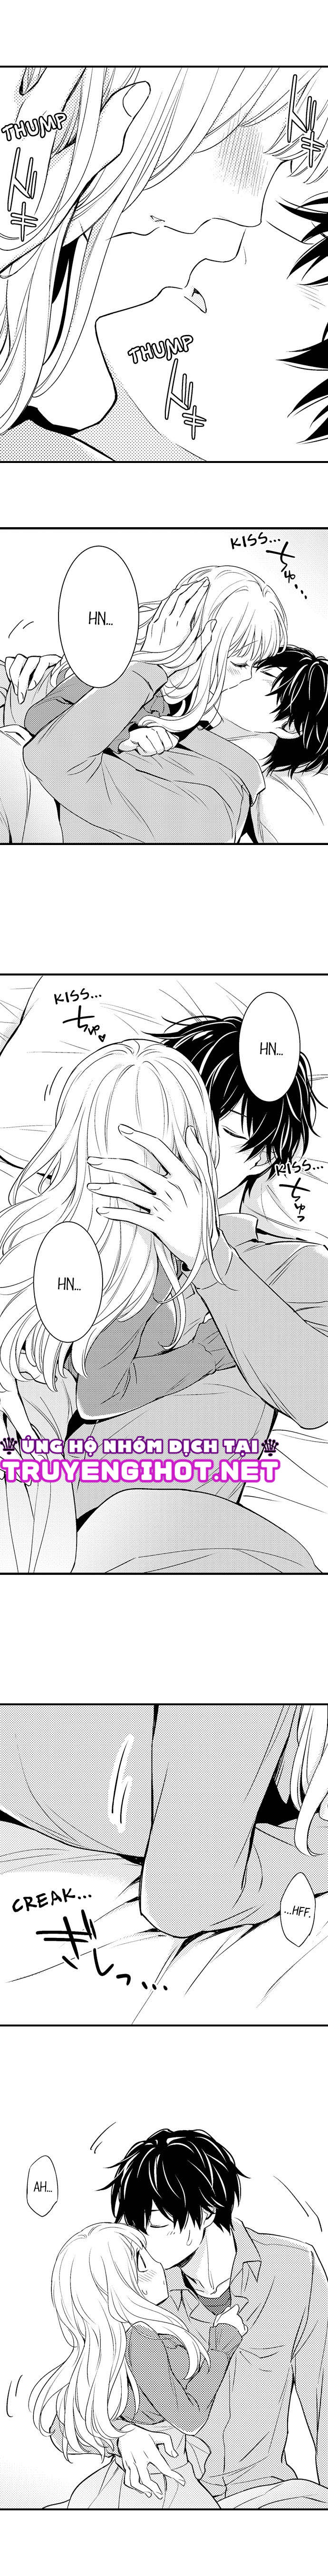 [18+] Hãy Ngủ Cùng Em, Haruomi-kun! (Full)